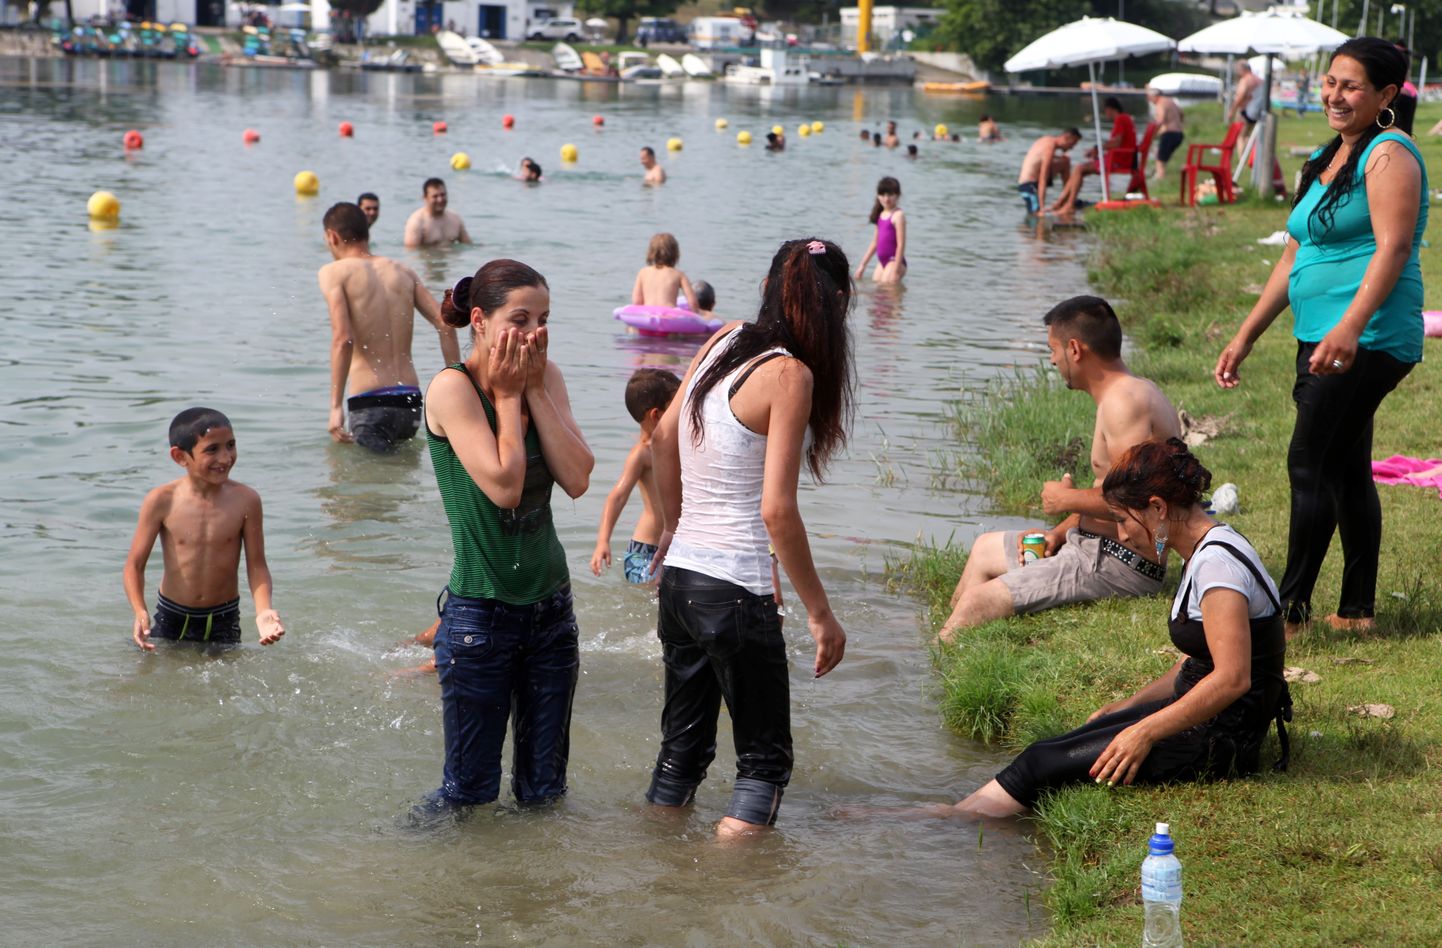 Cilvēki peldas Idroskalo mākslīgajā ezerā netālu no Milānas.